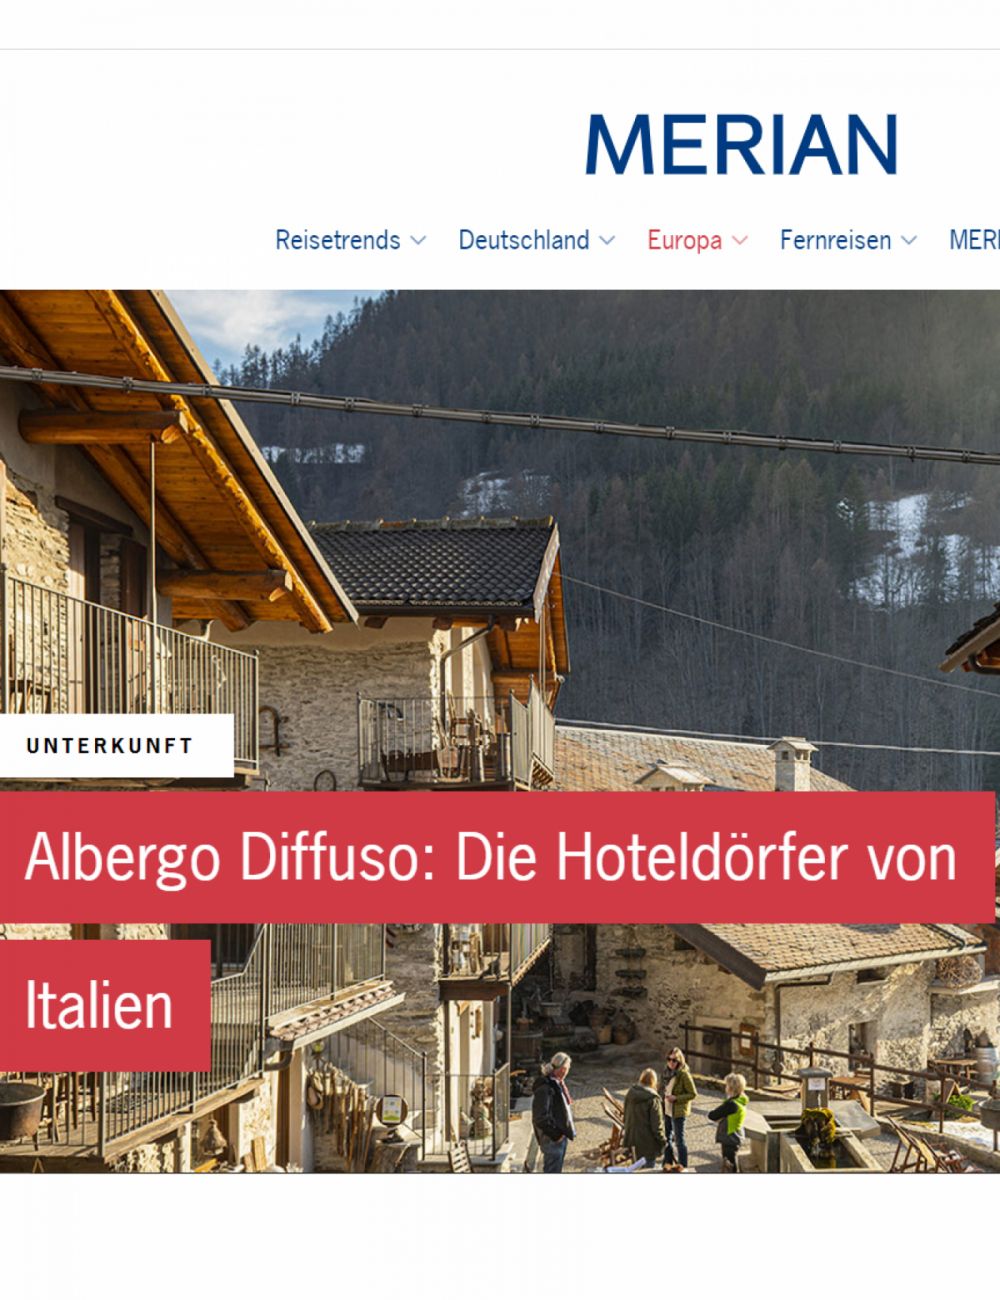 Albergo Diffuso: I villaggi alberghieri d'Italia - Merian - Francoforte